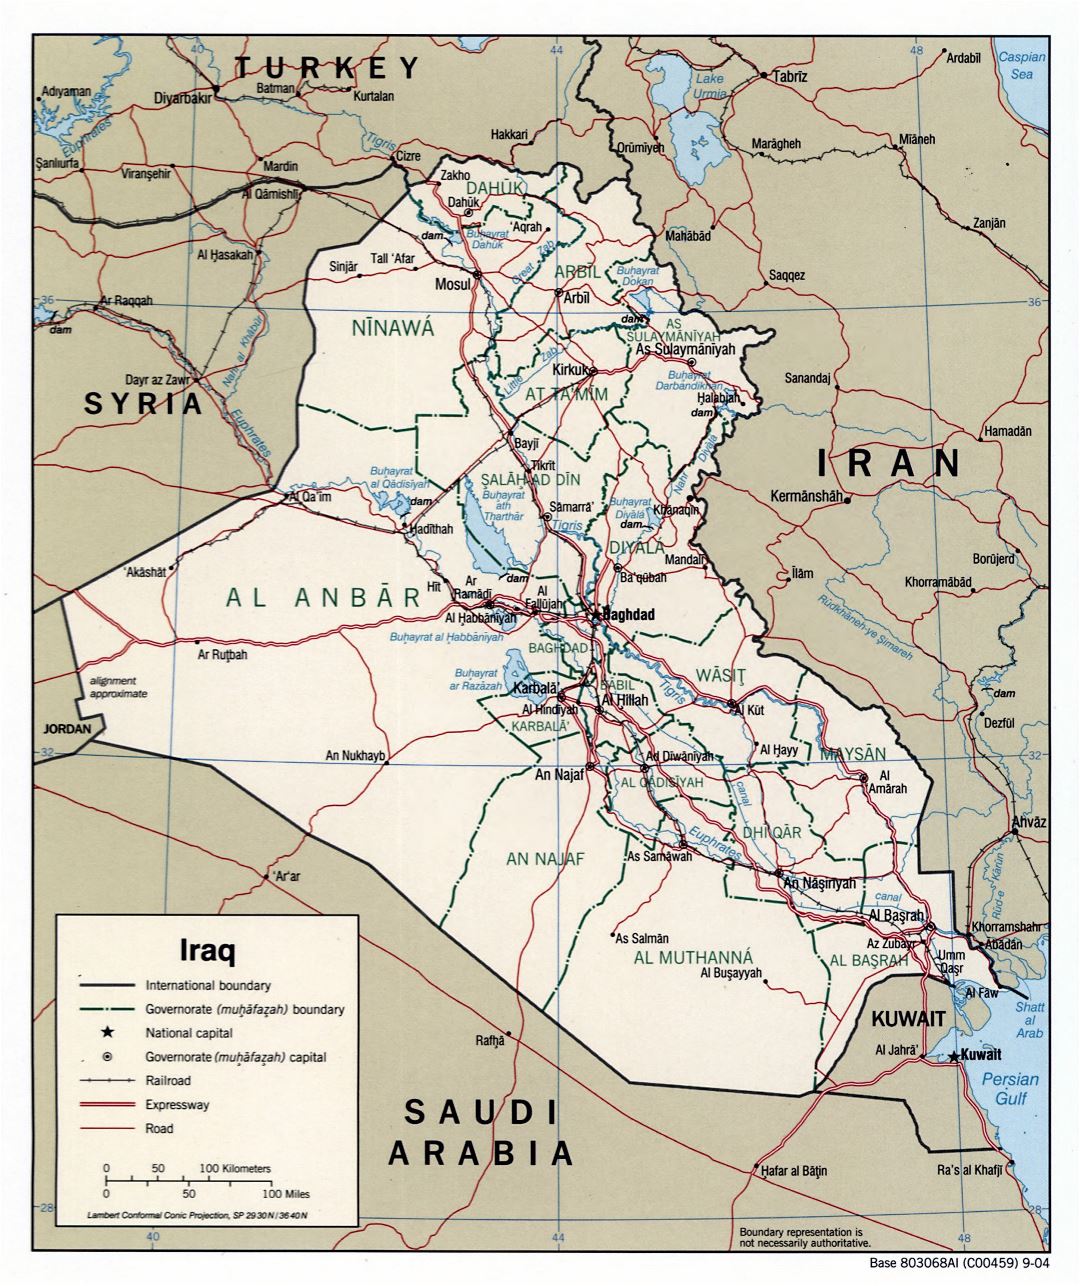 Grande detallado mapa político y administrativo de Irak con carreteras, autopistas, ferrocarriles y principales ciudades - 2004